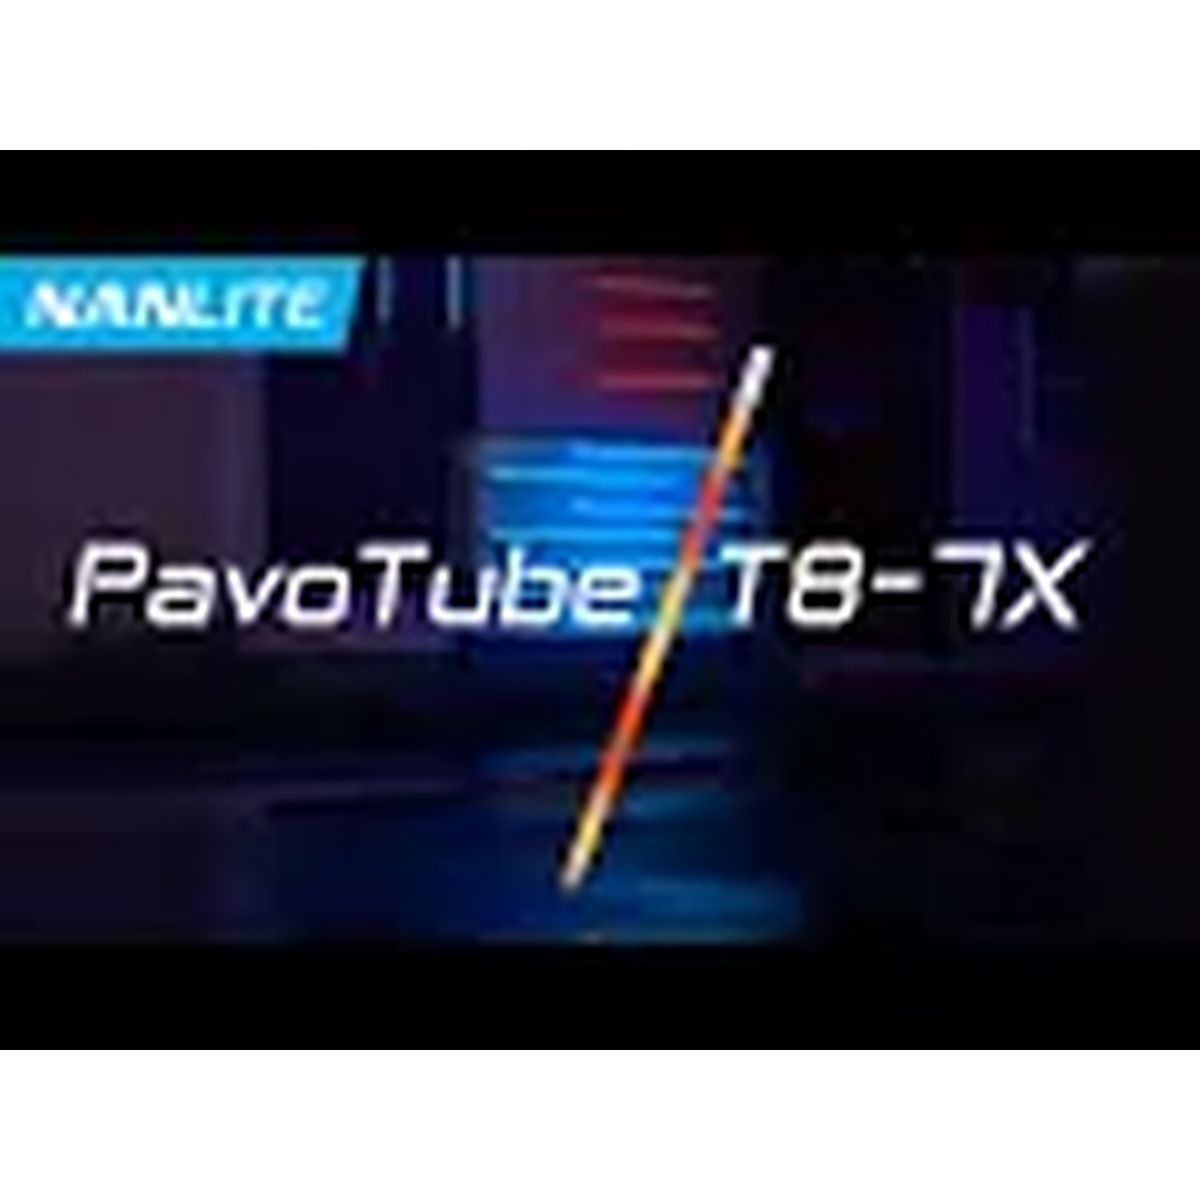 Nanlite PavoTube T8-7X 1er Kit RGBWW Farb-Effektleuchte